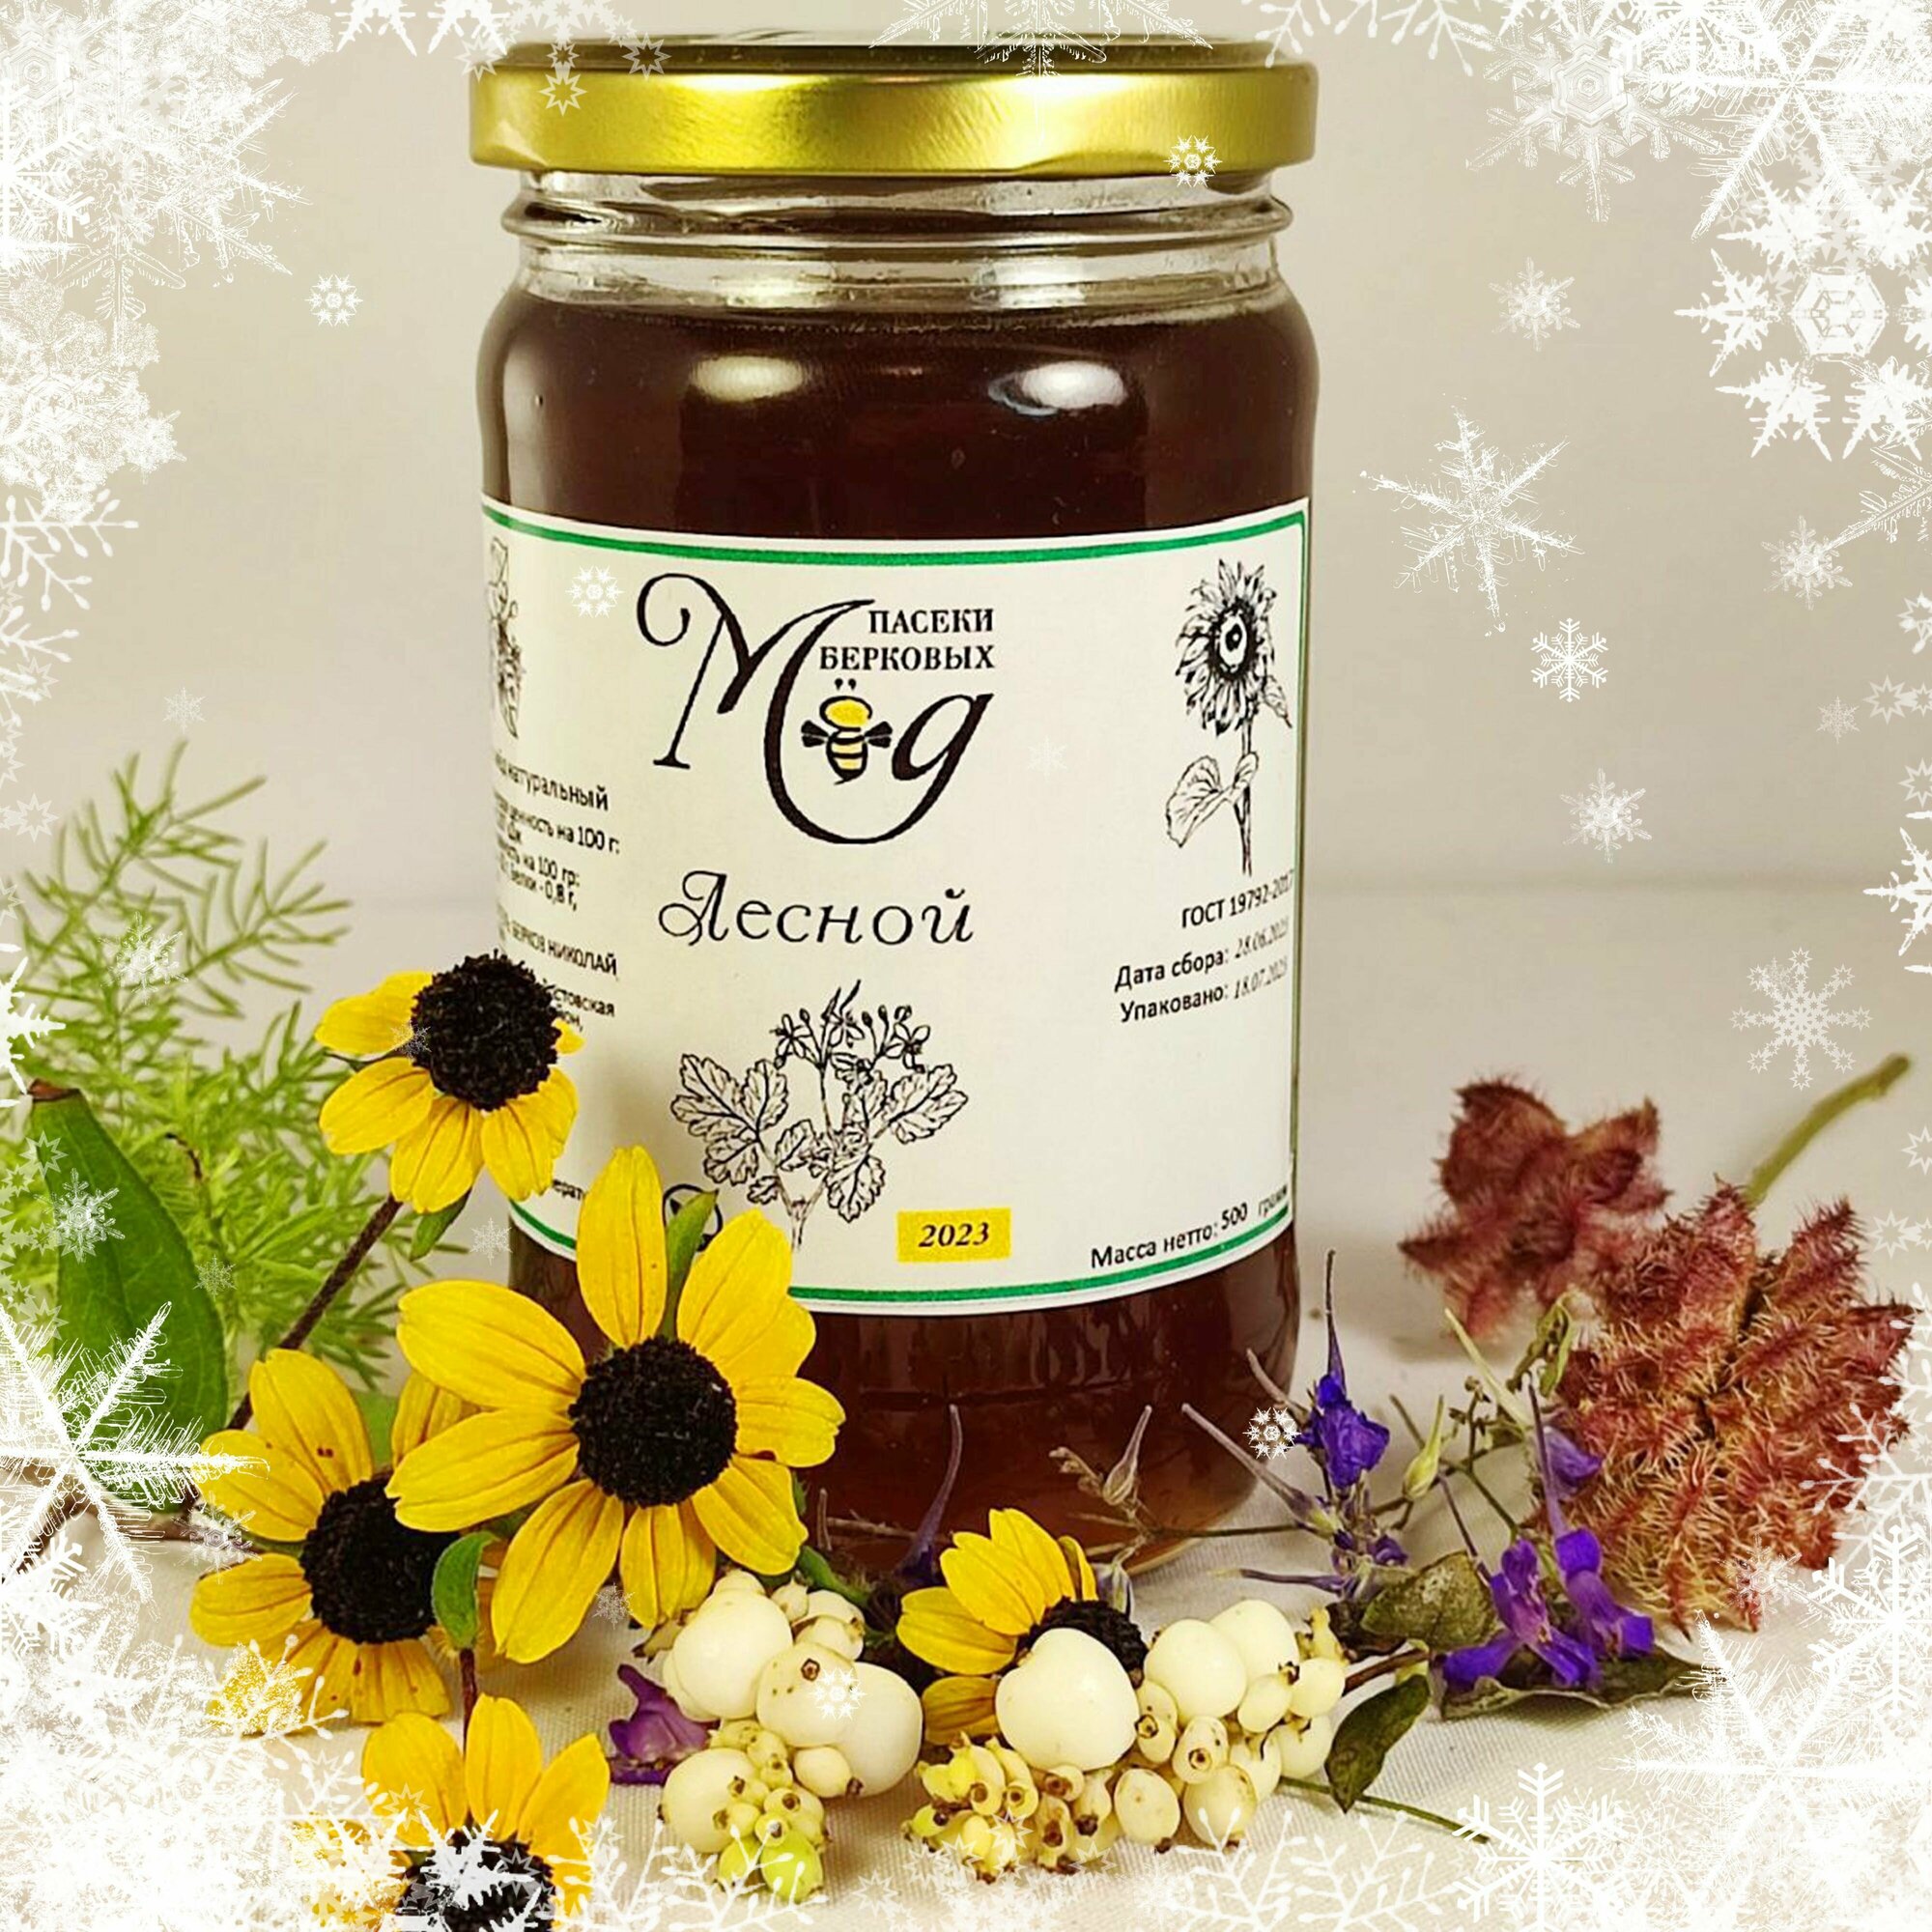 Мед Лесной 500 г, натуральный мед лесное разнотравье 2023 г, мед пасеки Берковых